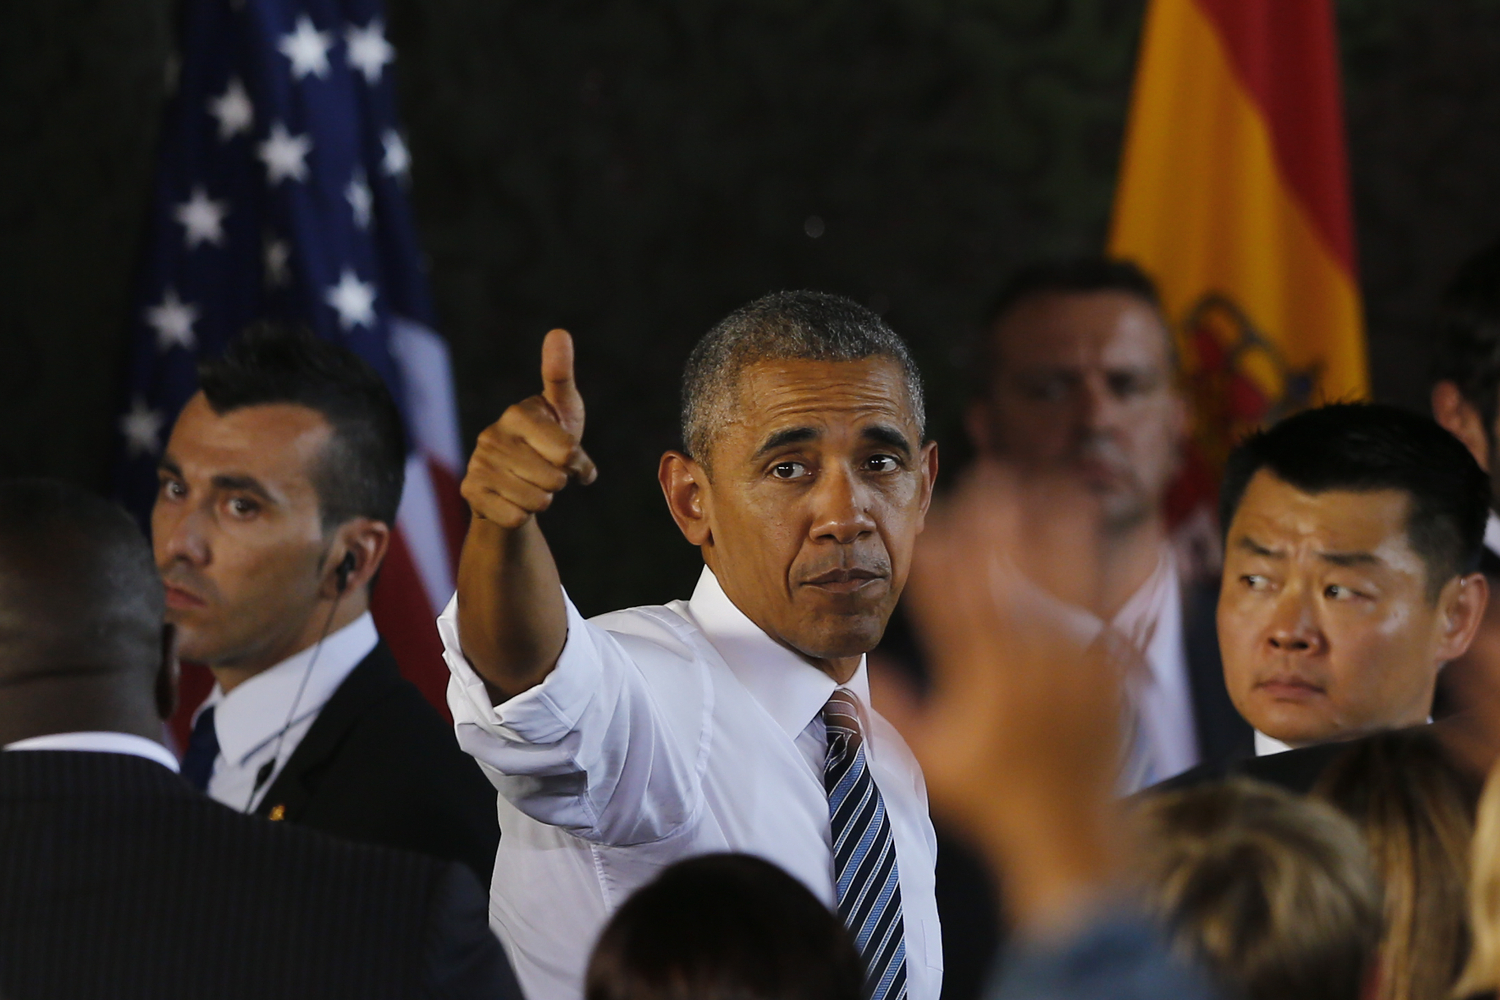 La visita express de Obama a España: jamón, una limusina de siete toneladas y el chasco de los sevillanos